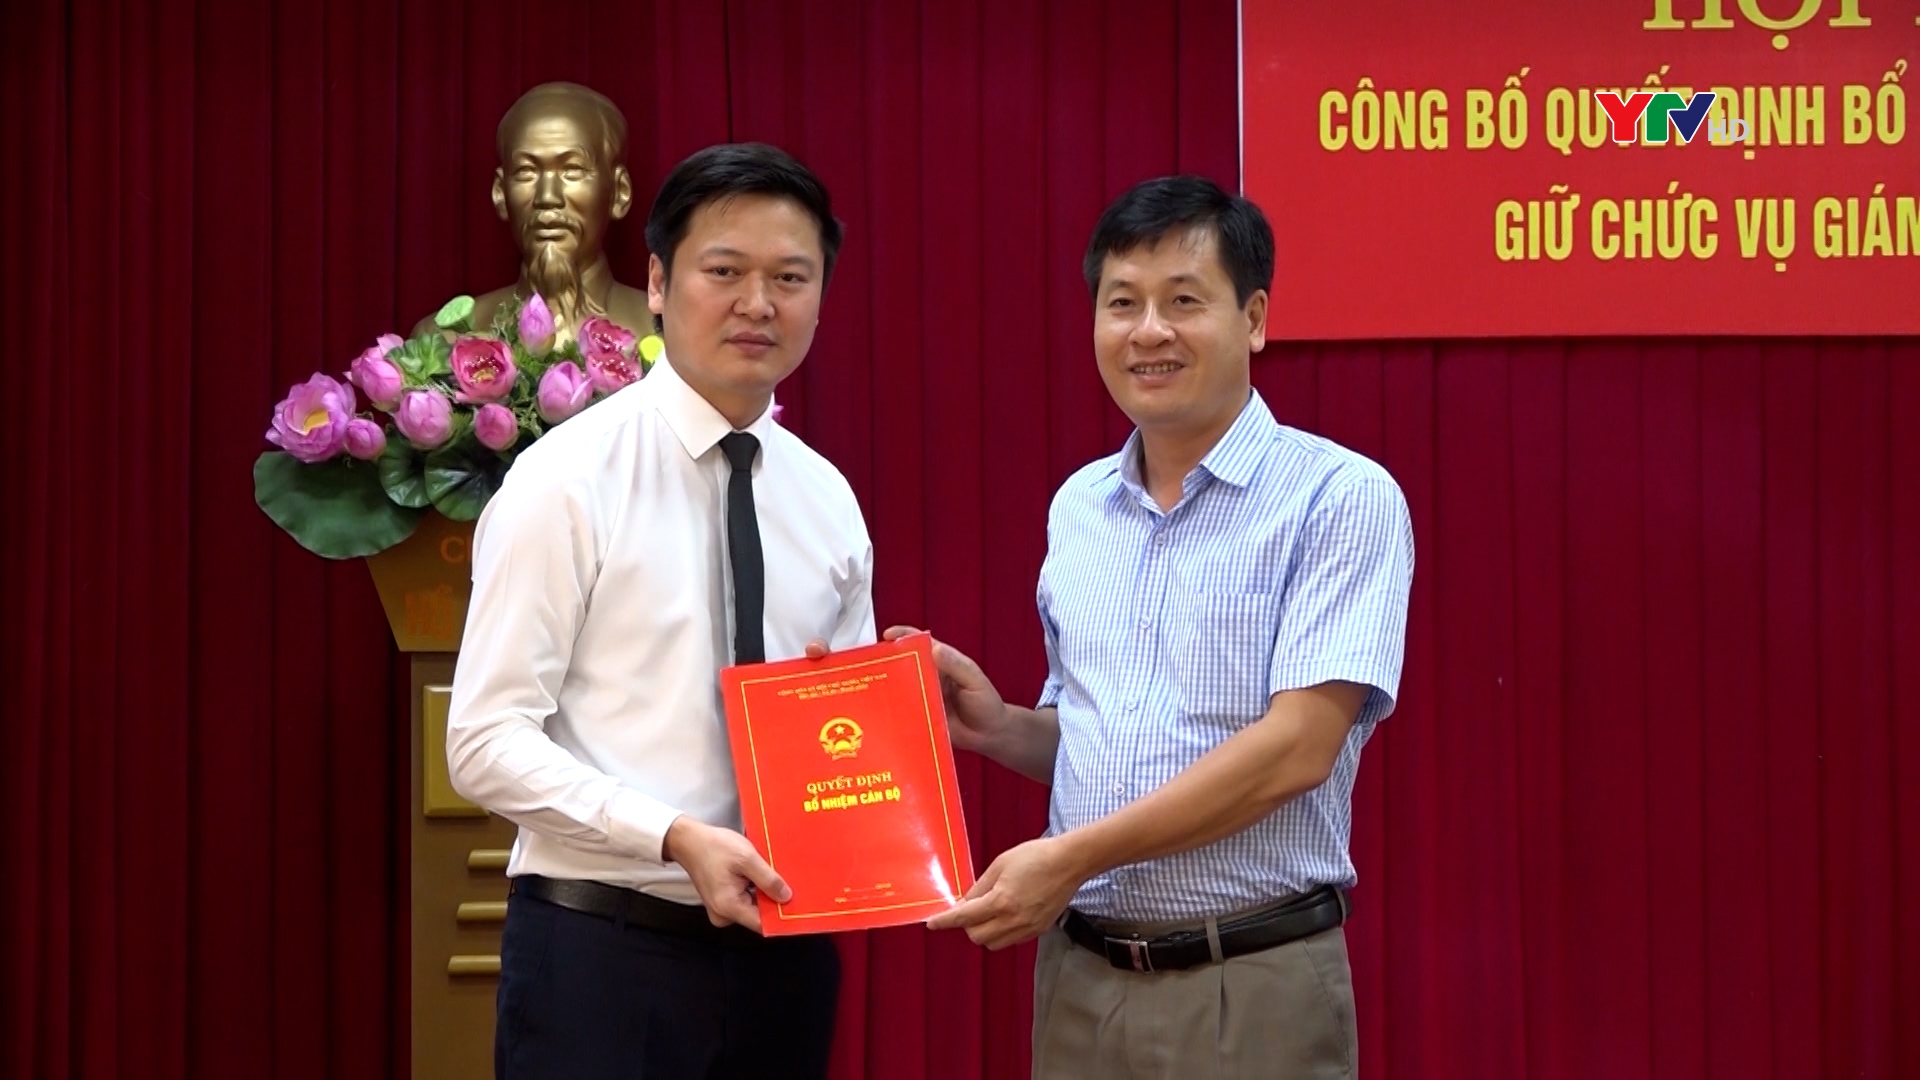 Đồng chí Trần Việt Quý được bổ nhiệm giữ chức Giám đốc Sở Xây dựng Yên Bái